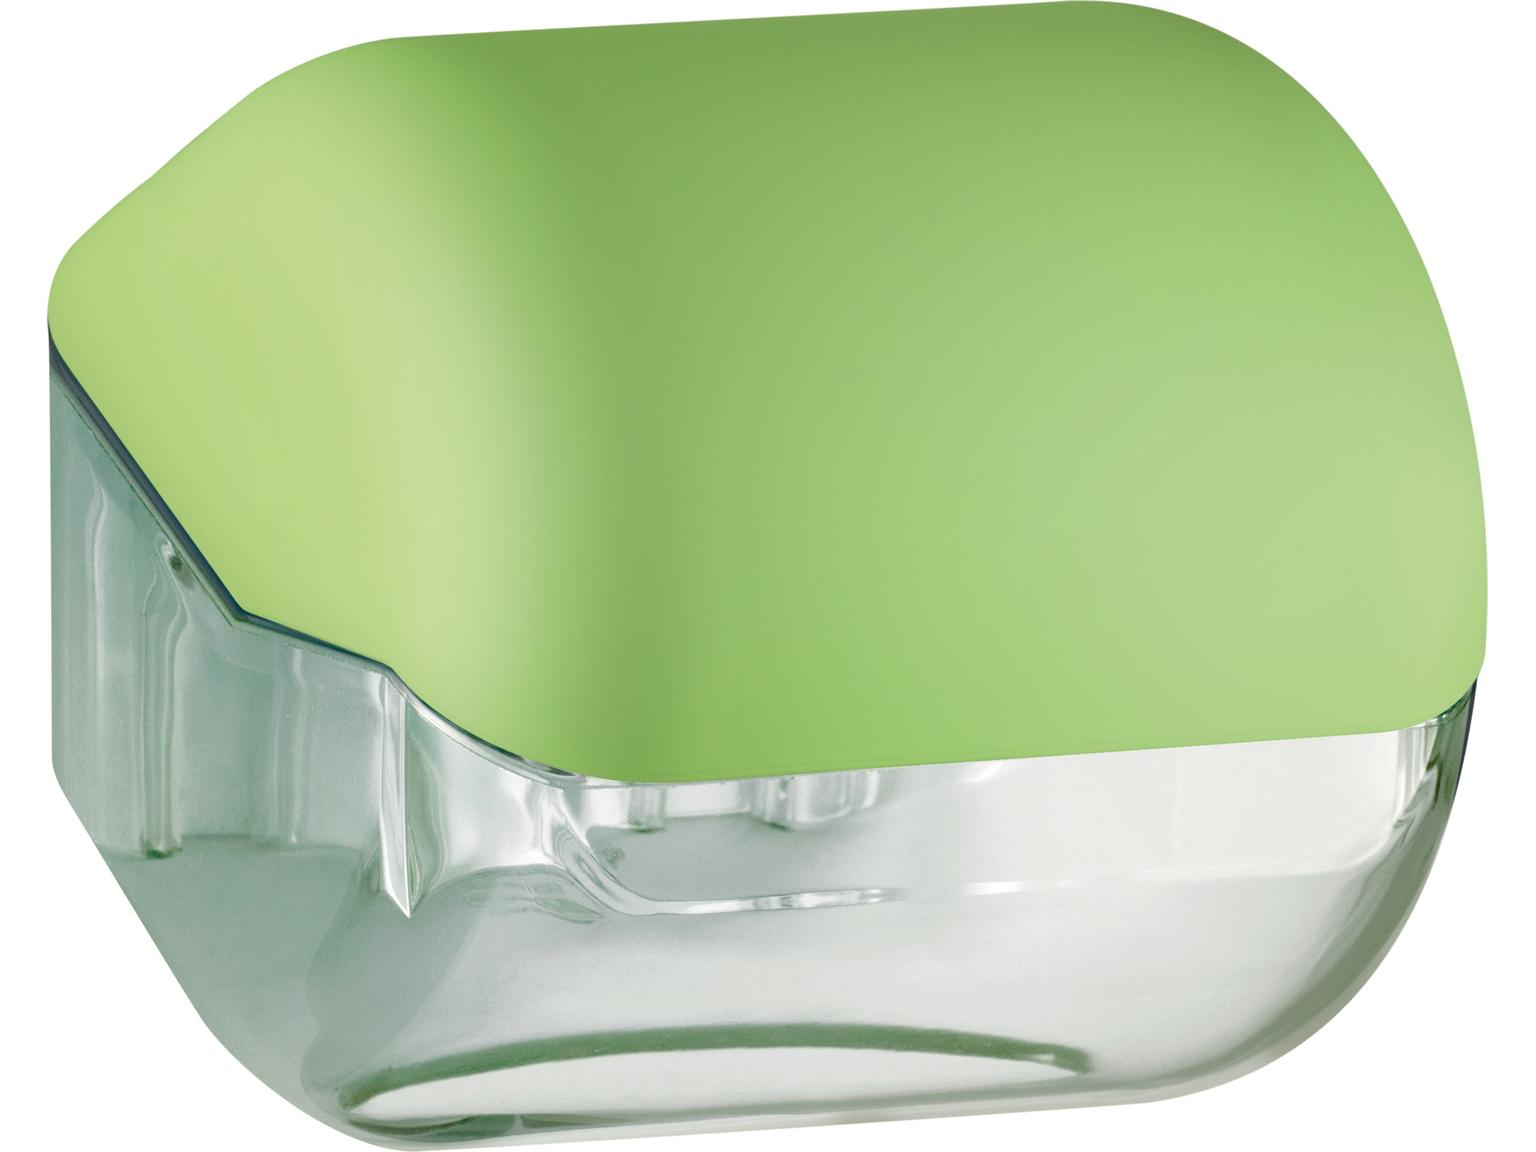 TOILETTENPAPIER-SPENDER  Colored, für 1 Kleinrolle, grün